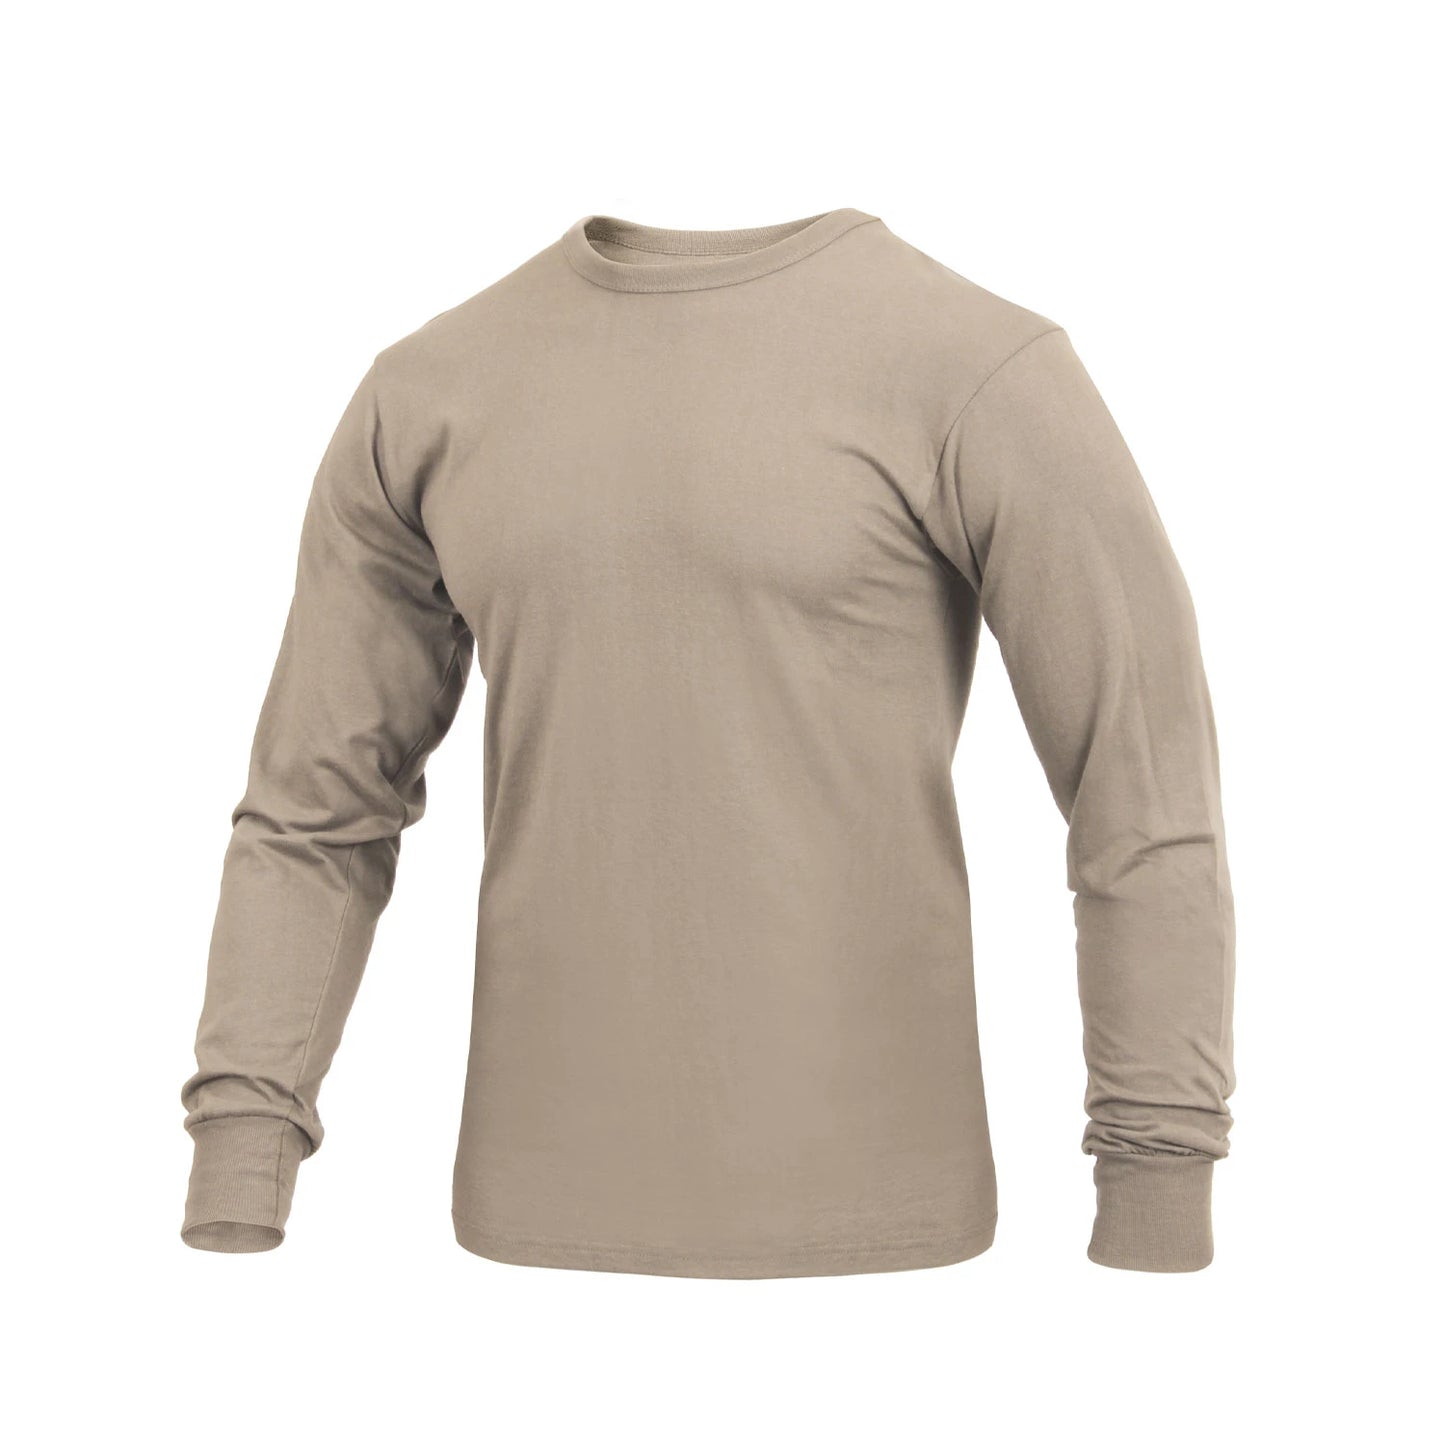 Desert Sand - Long Sleeve T-Shirt